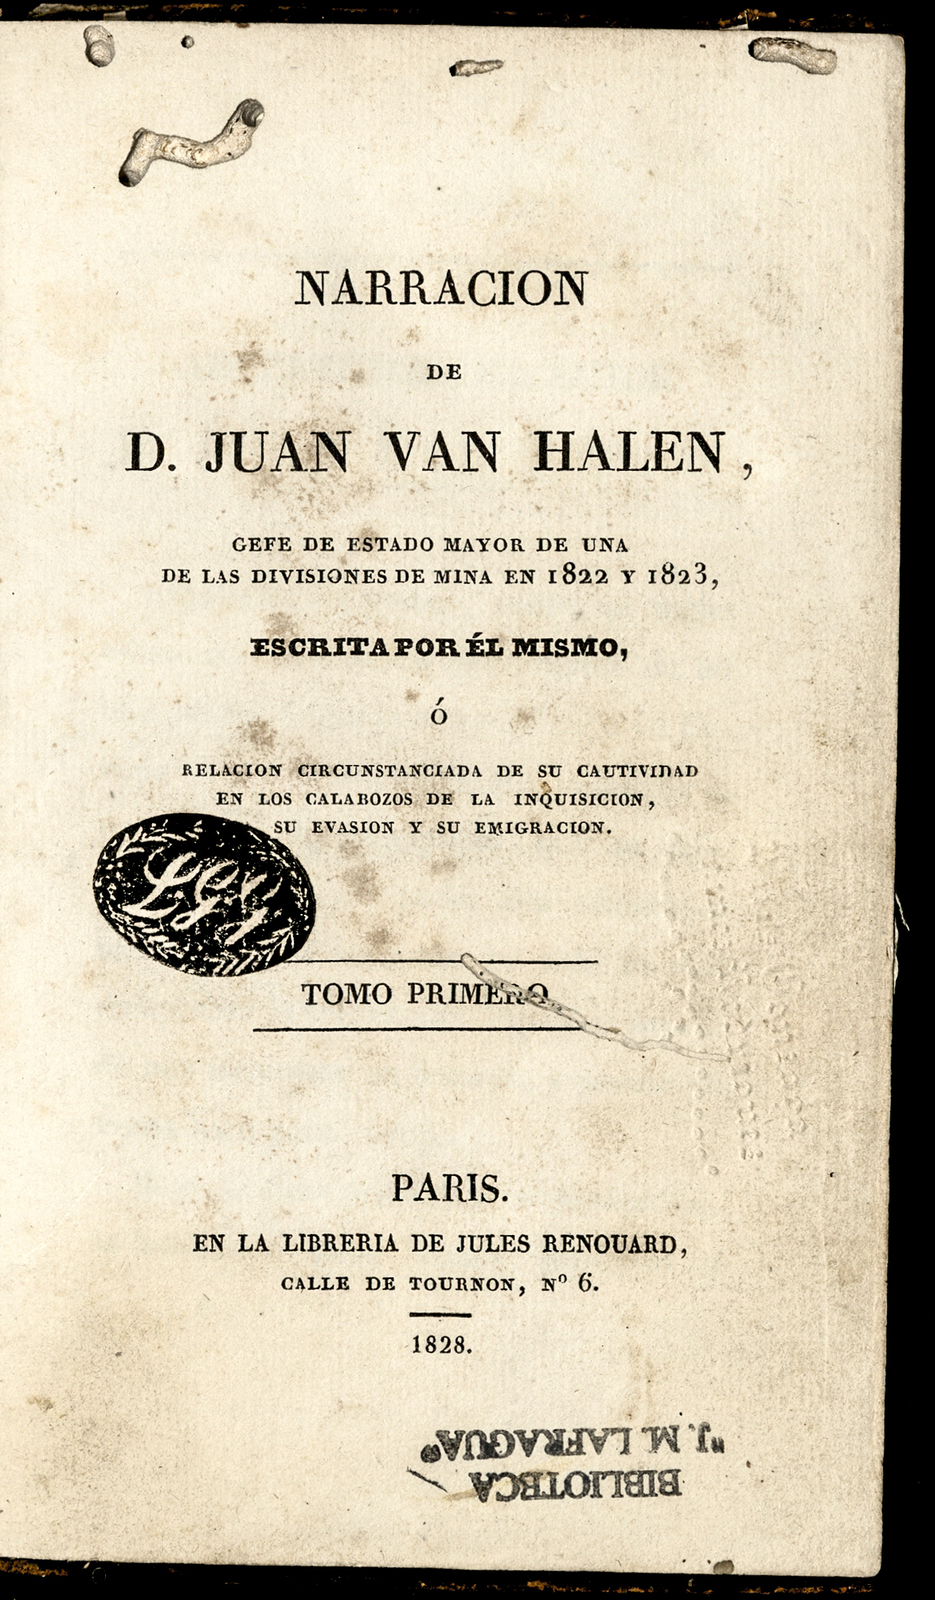 Narración de D. Juan van Halen : Gefe de Estado Mayor de una de las divisiones de Mina en 1822 y 1823 / escrita por él mismo ó relación circunstanciada de su cautividad en los calabozos de la Inquisición, su evasión y su emigración. <br />
Tomo I